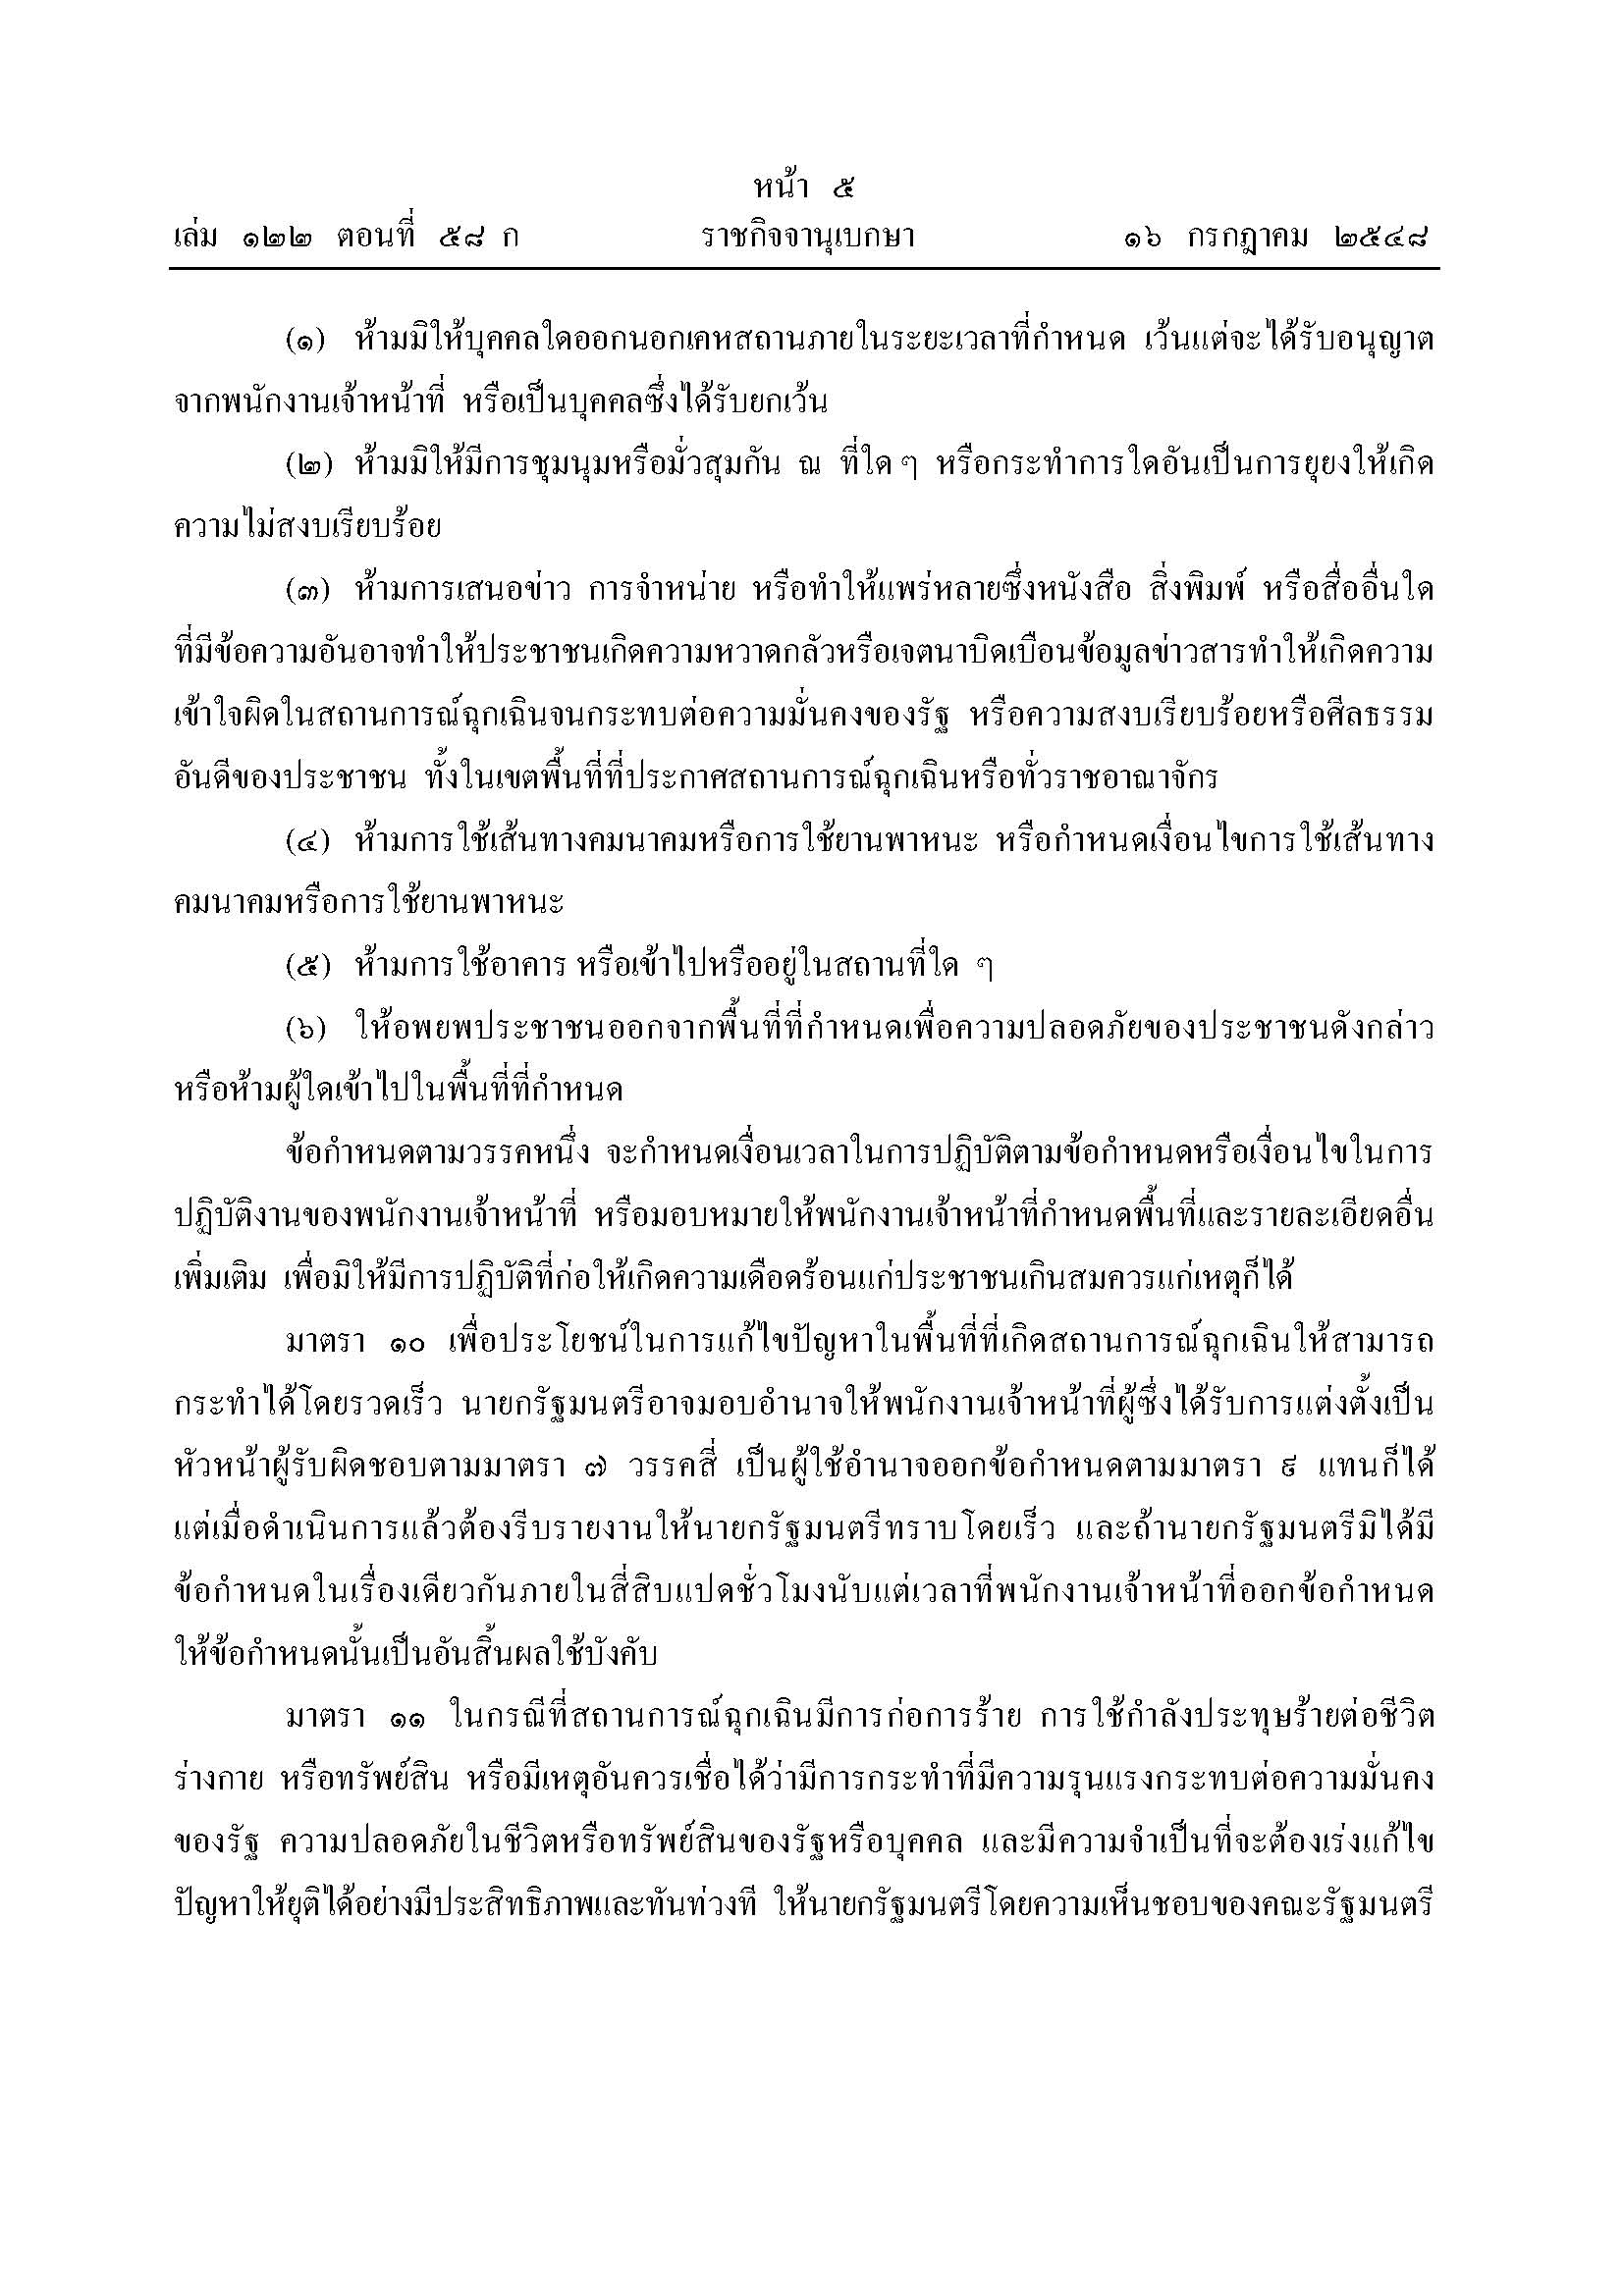 พรก-ฉุกเฉิน-58-01_Page_5